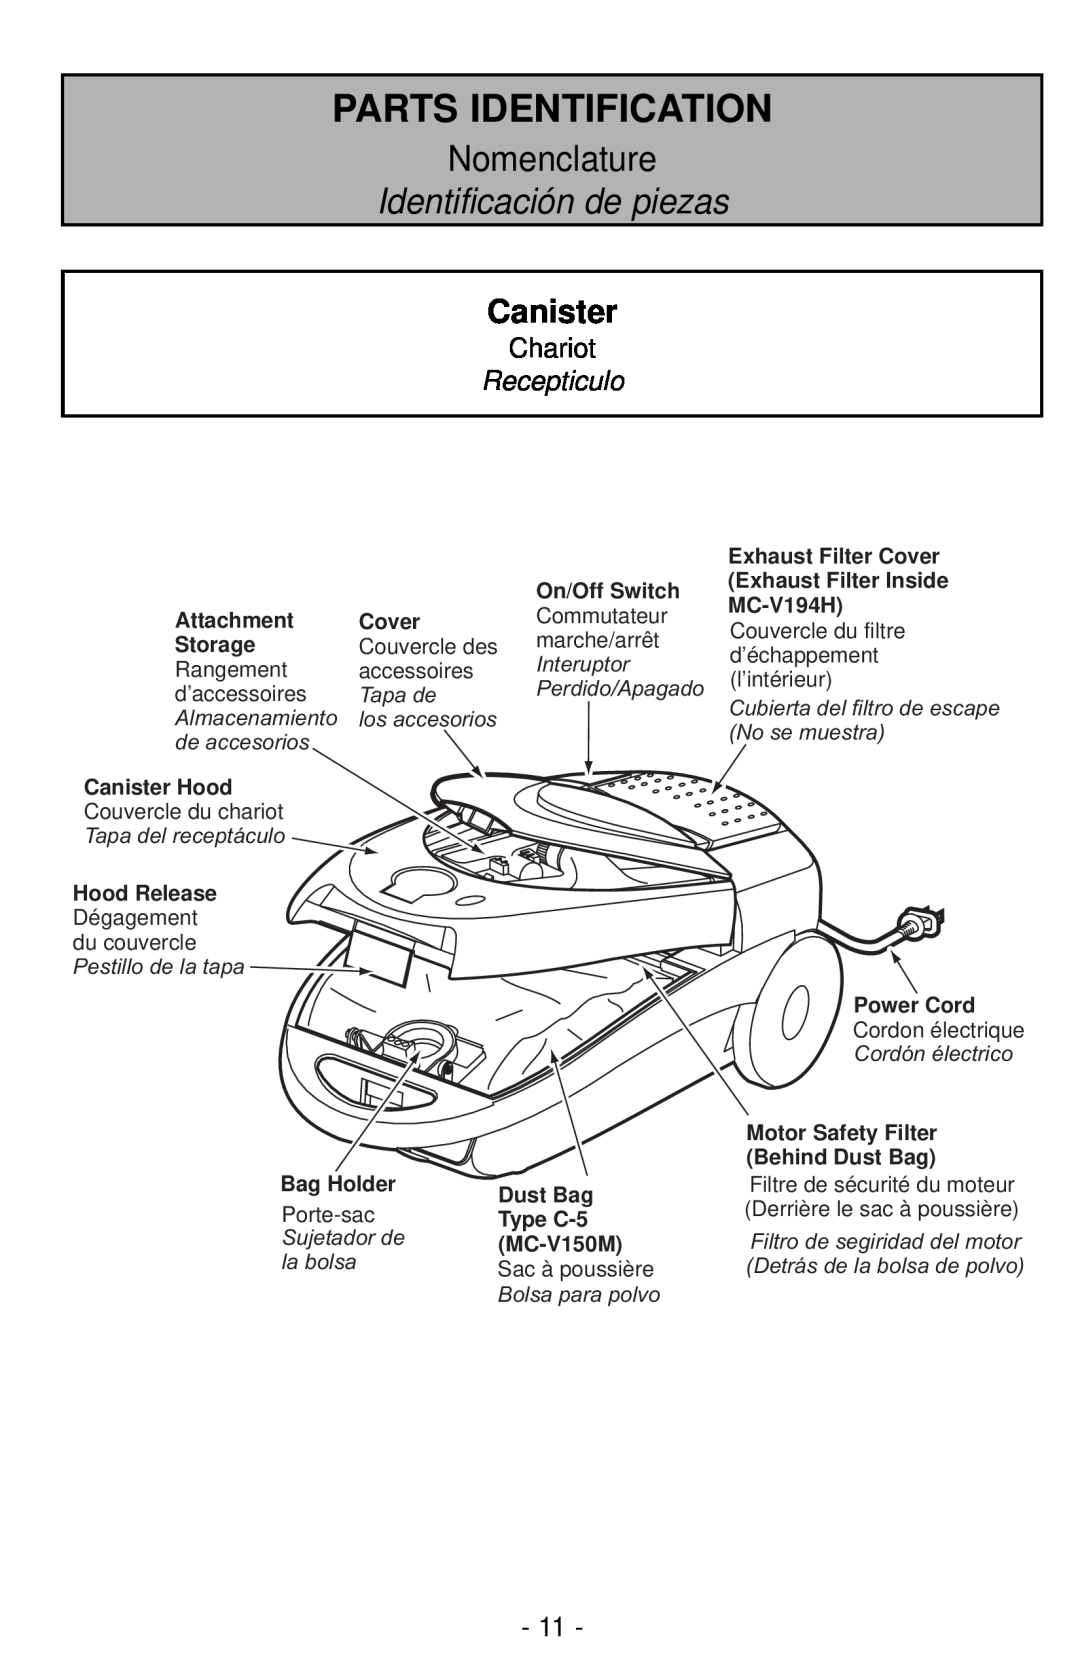 Panasonic MC-CG901 Canister, Chariot, Recepticulo, Parts Identification, Nomenclature, Identificación de piezas, Cover 